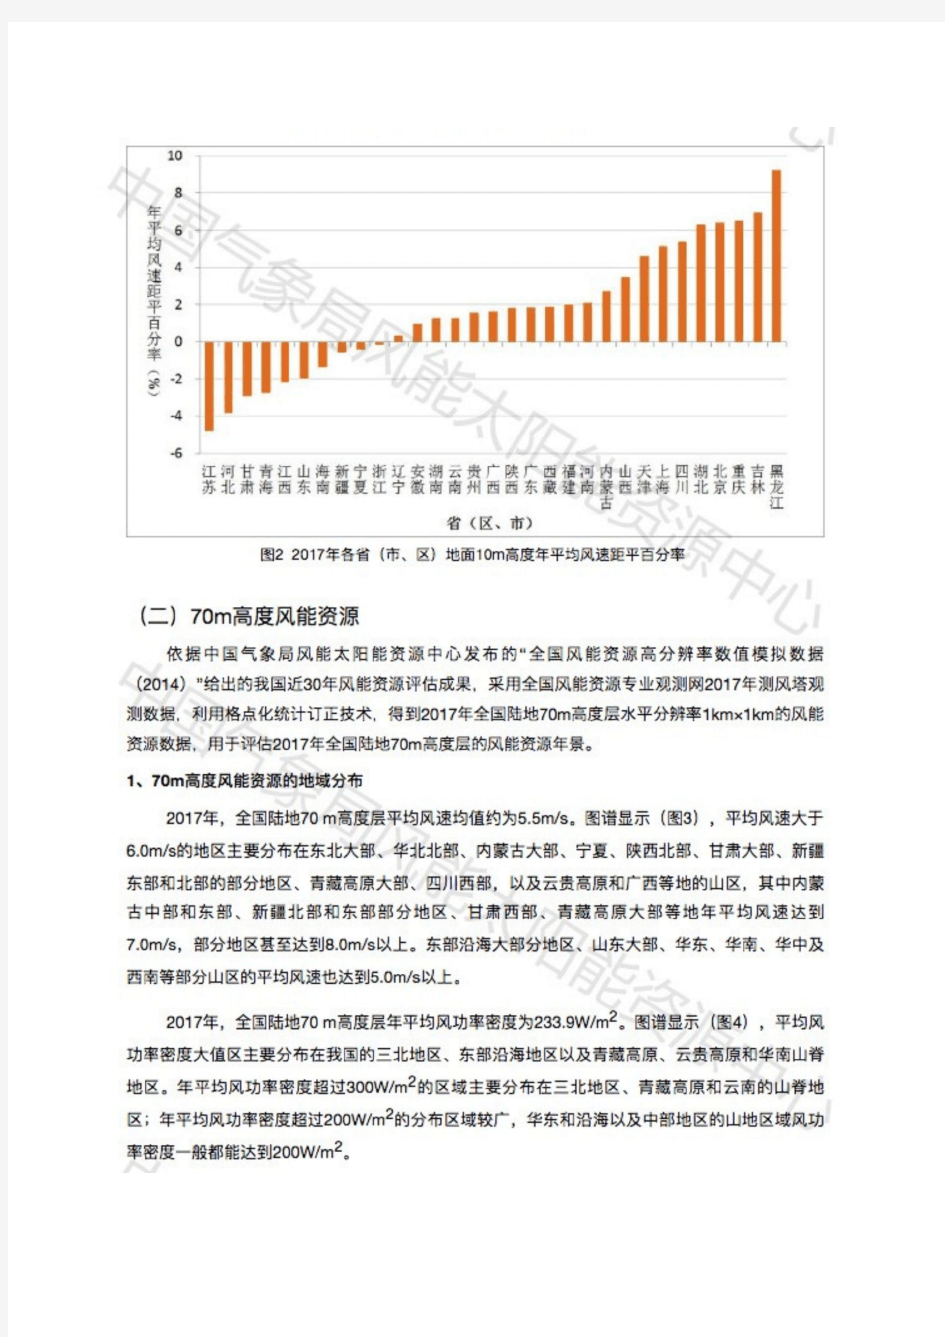 2017年中国风能太阳能资源年景公报--图片文字整理版